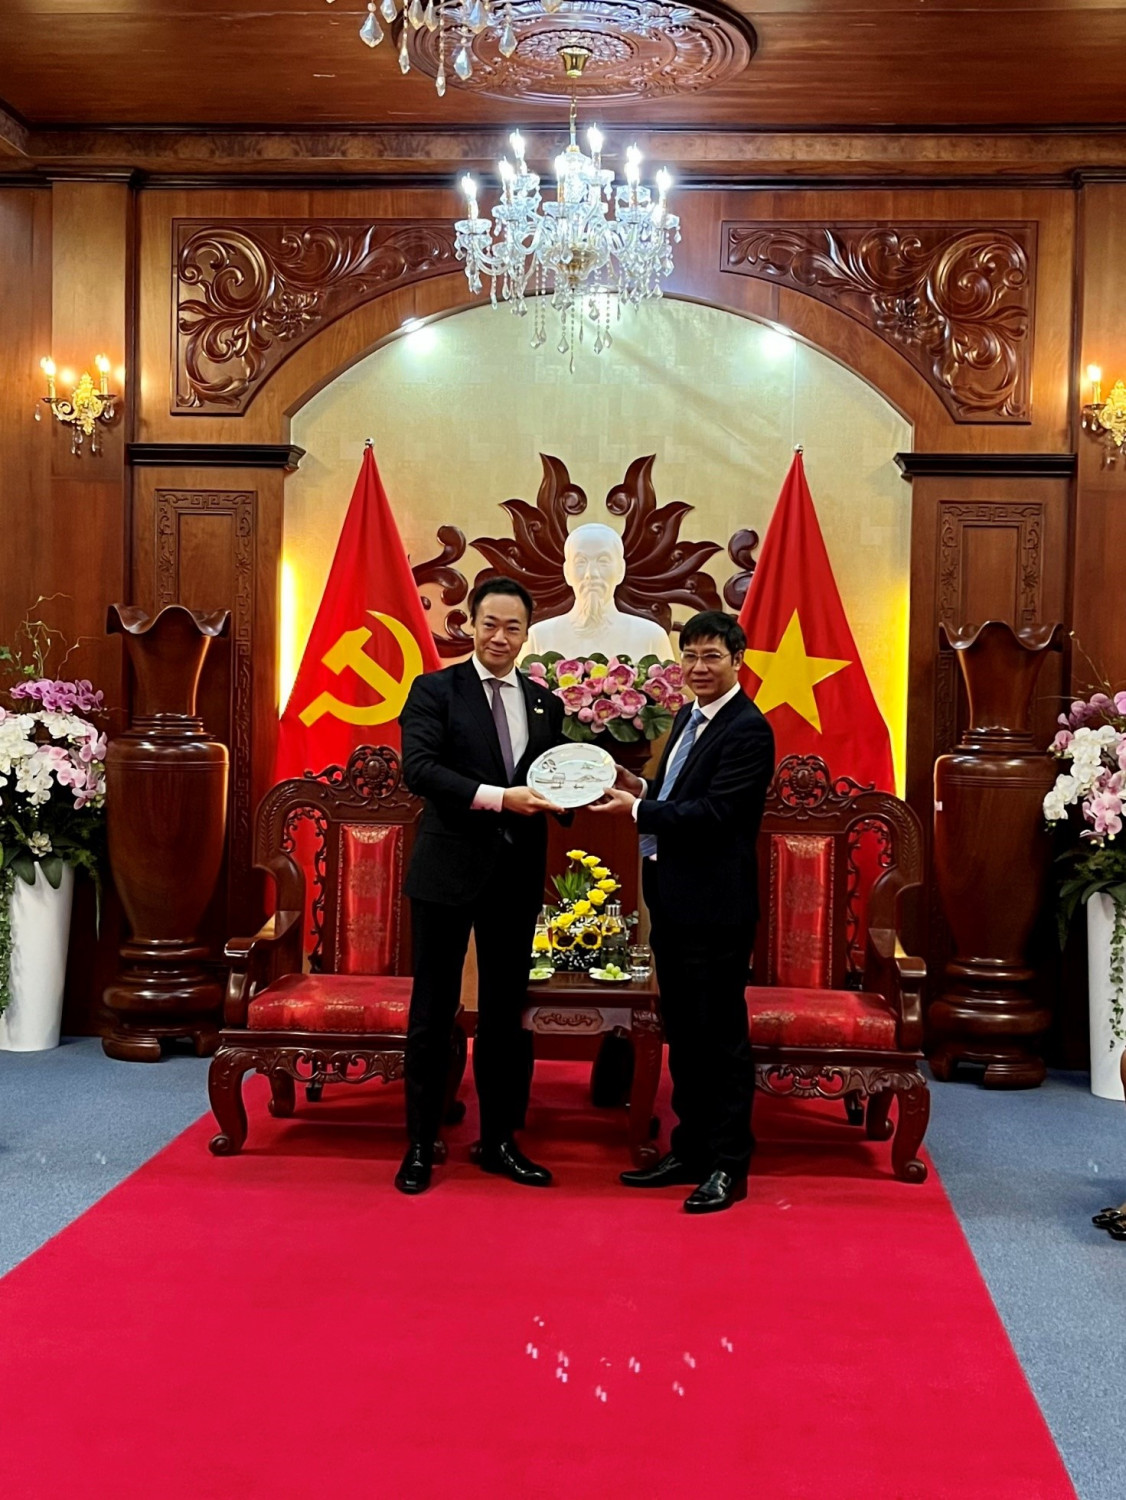 Bí thư Tỉnh ủy Nguyễn Thành Tâm tặng quà lưu niệm đến ông Hạ Nghị sĩ SUZUKI KEISUKE